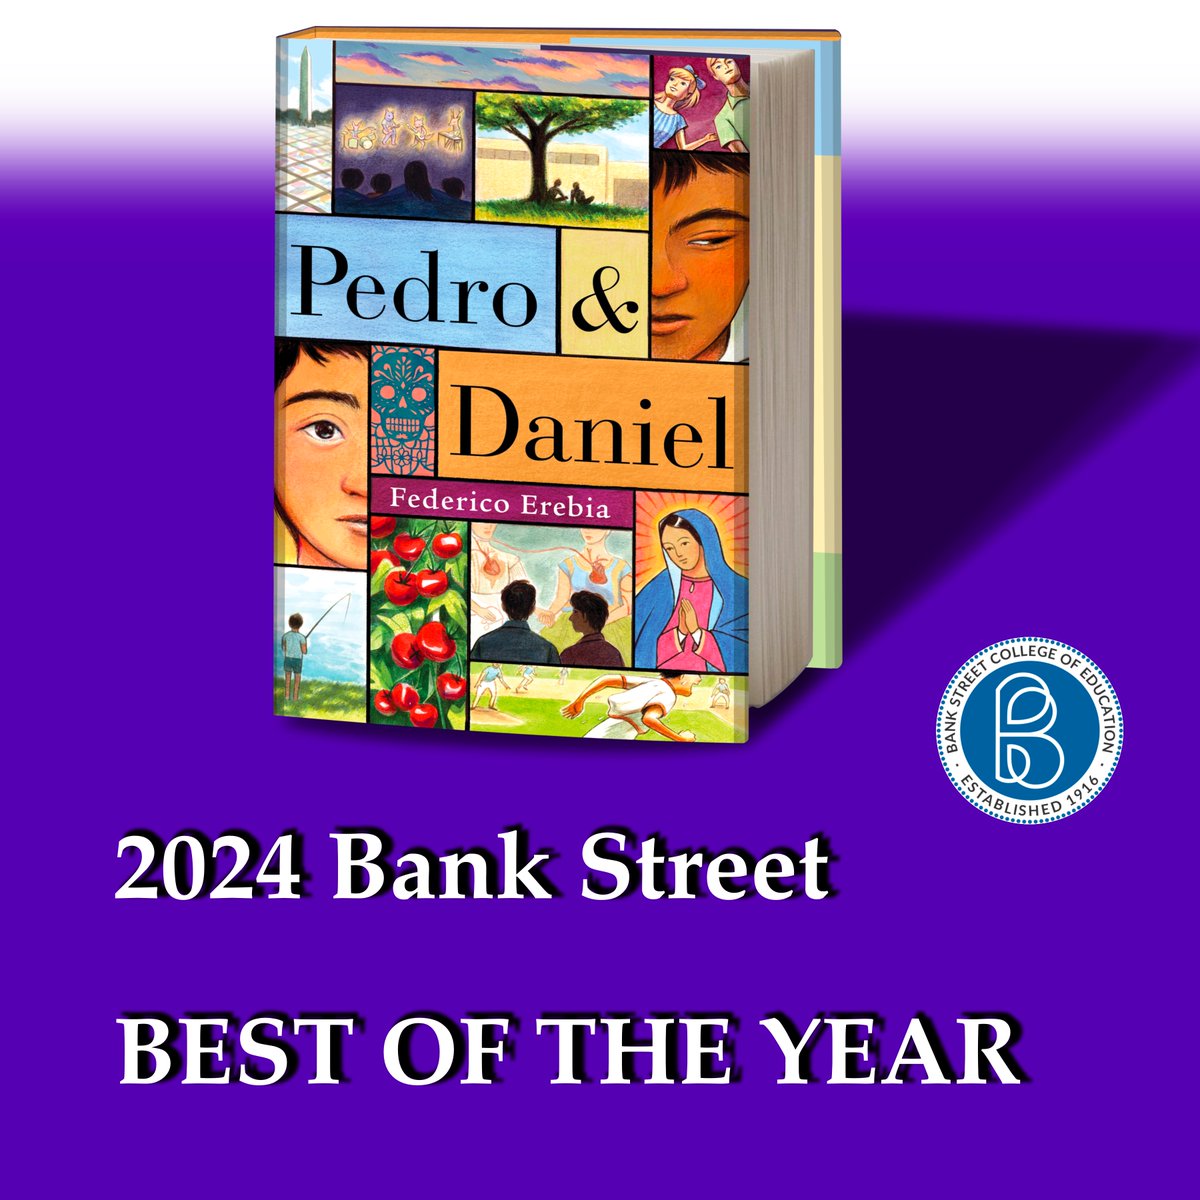 The 2024 Bank Street BEST BOOKS OF THE YEAR include

PEDRO & DANIEL

#PedroAndDaniel #PedroWithoutDaniel @bankstreetedu @BankStreetLib @FedericoErebia #BookTwitter #LibraryTwitter #TeacherTwitter